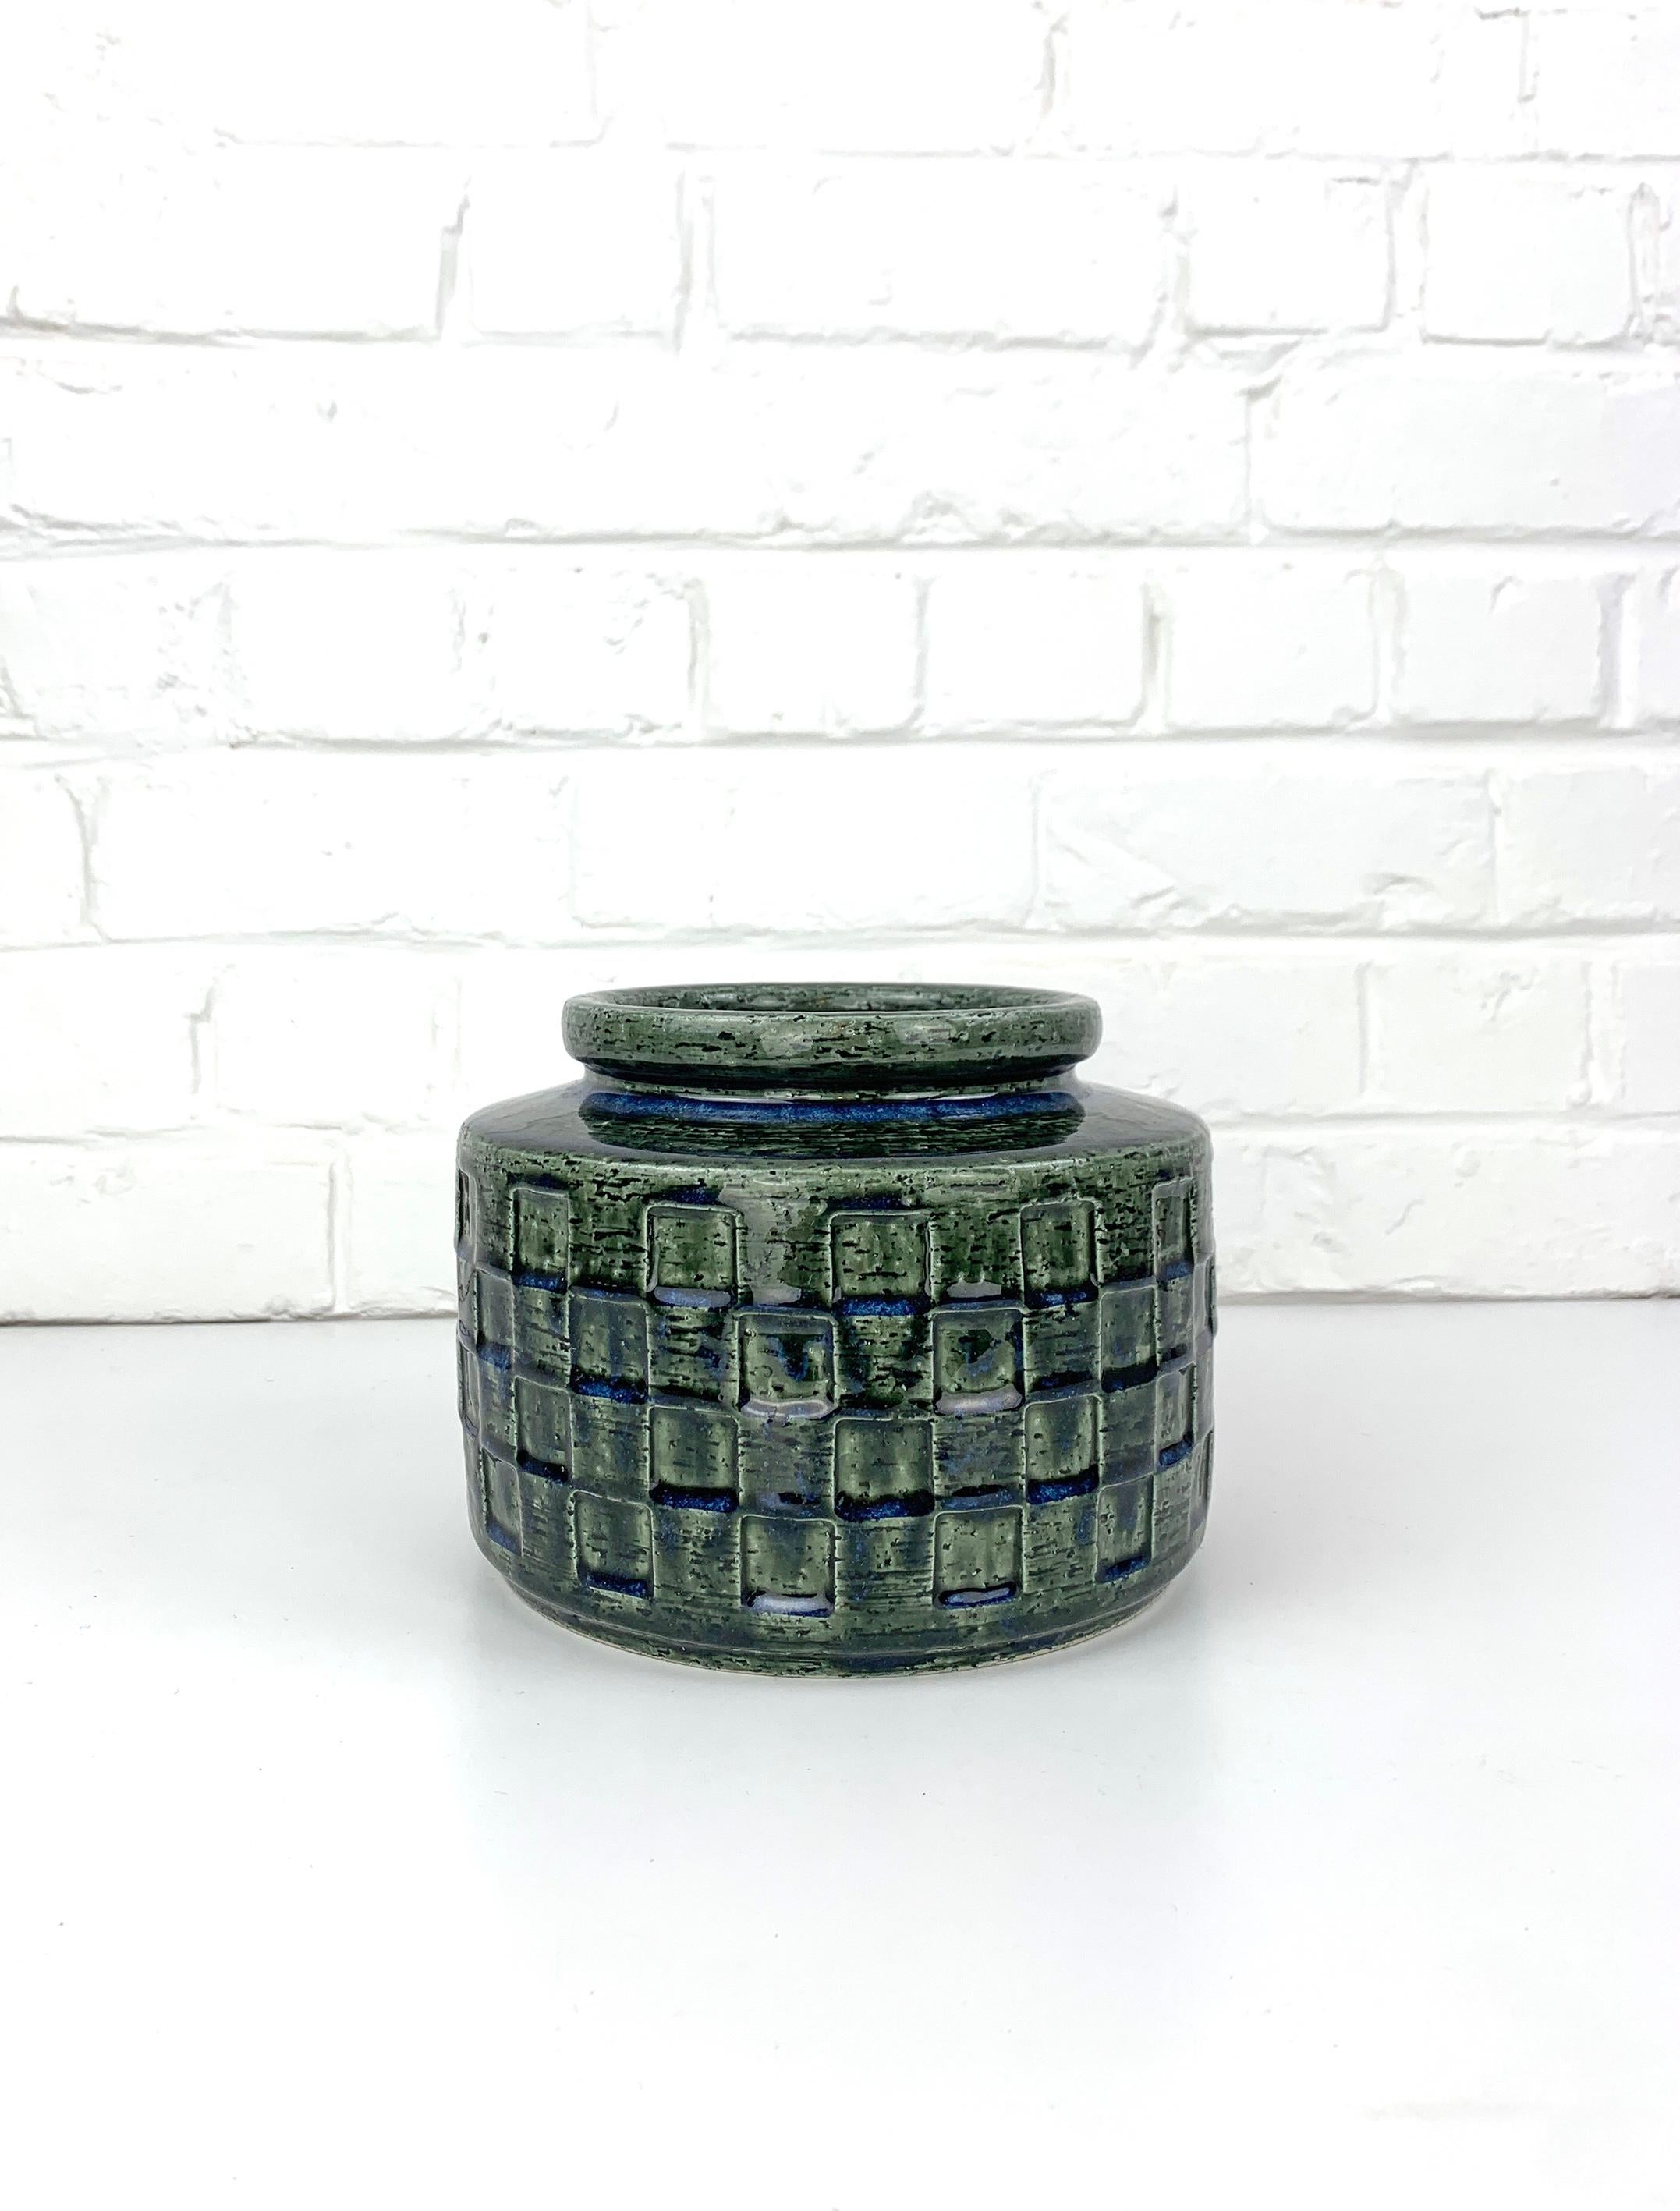 Große Keramikvase in dunklen Grüntönen mit dunkelblauen Effekten auf der Außenseite. Er ist mit einer dicken Glasur versehen. Skandinavische Mid-Century Keramik. 

Produziert in den 1960er Jahren von Palshus (Dänemark), gegründet von Per und seiner